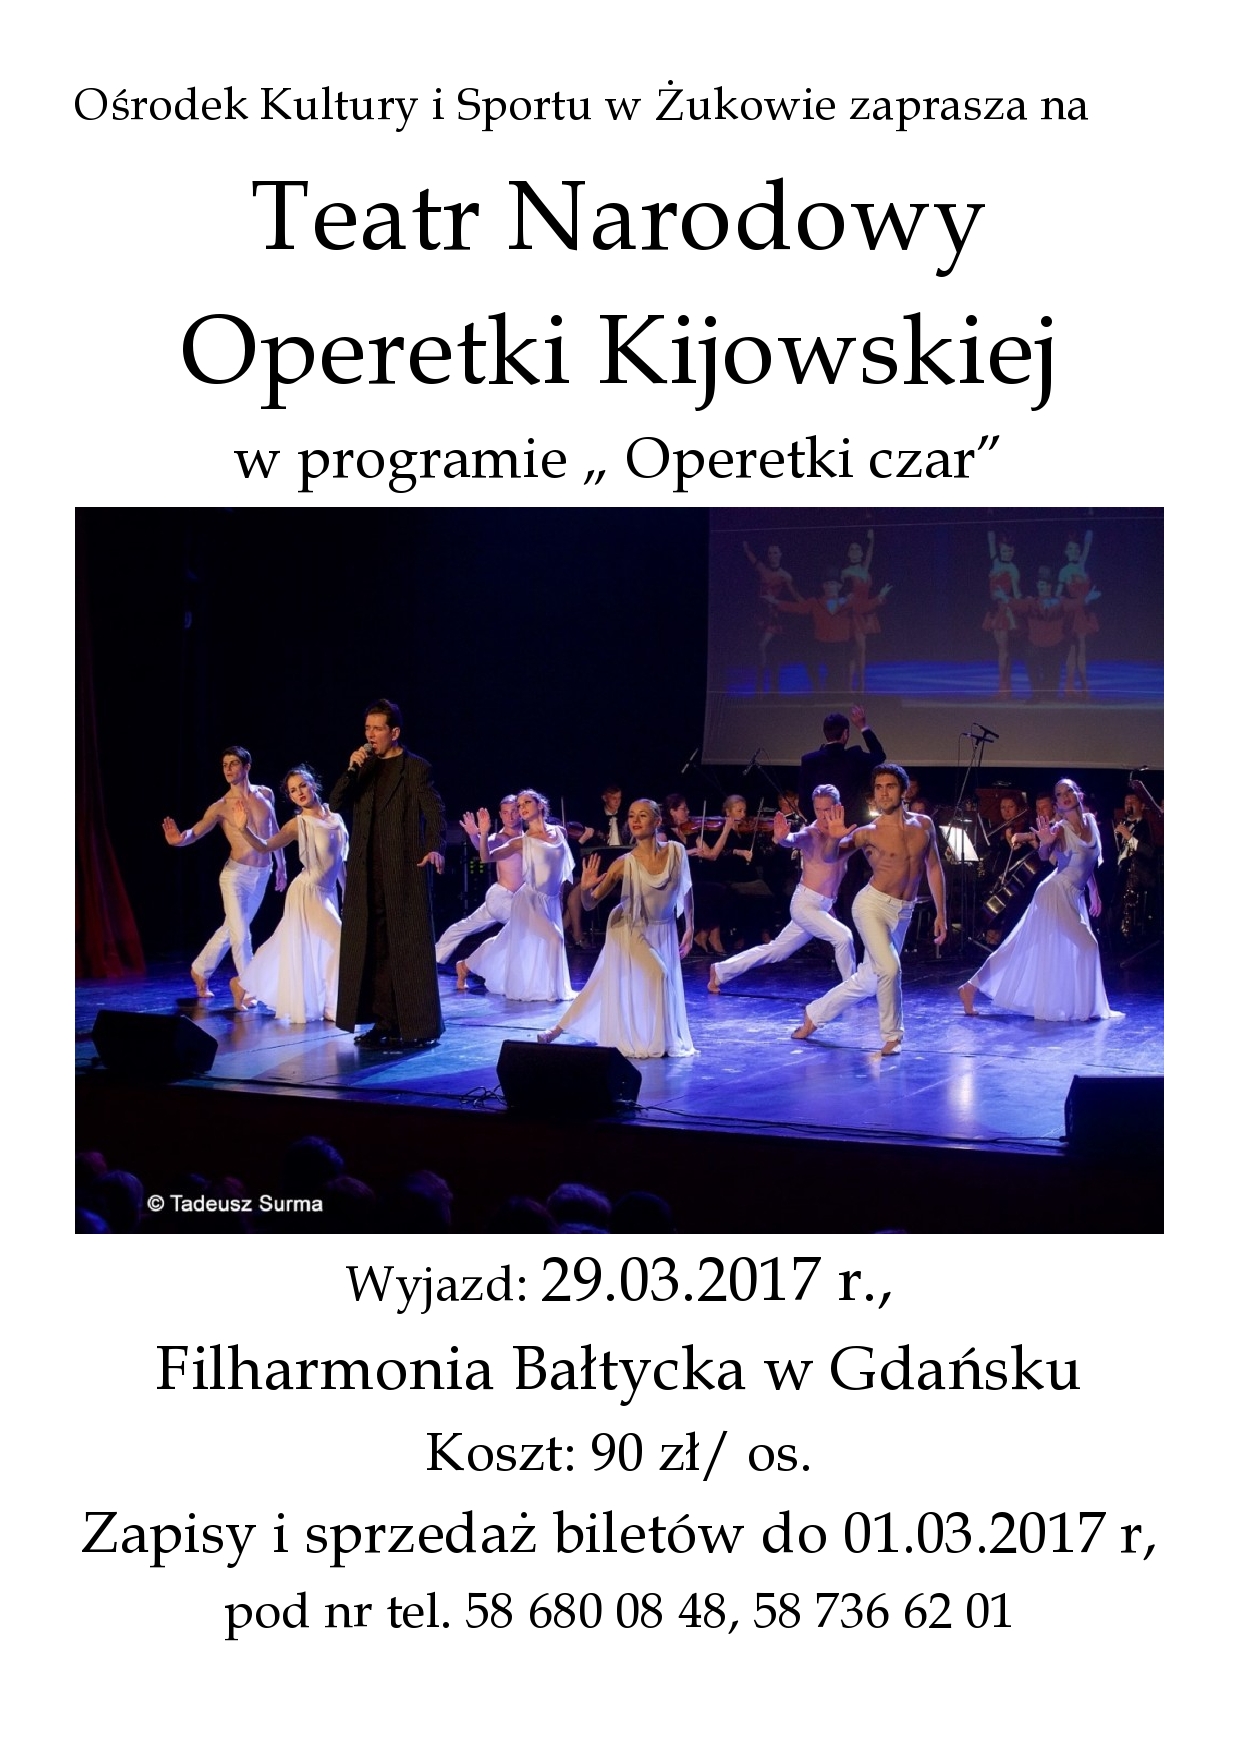 Operetki Czar - OKiS Żukowo zaprasza na Teatr Narodowy Operetki Kijowskiej